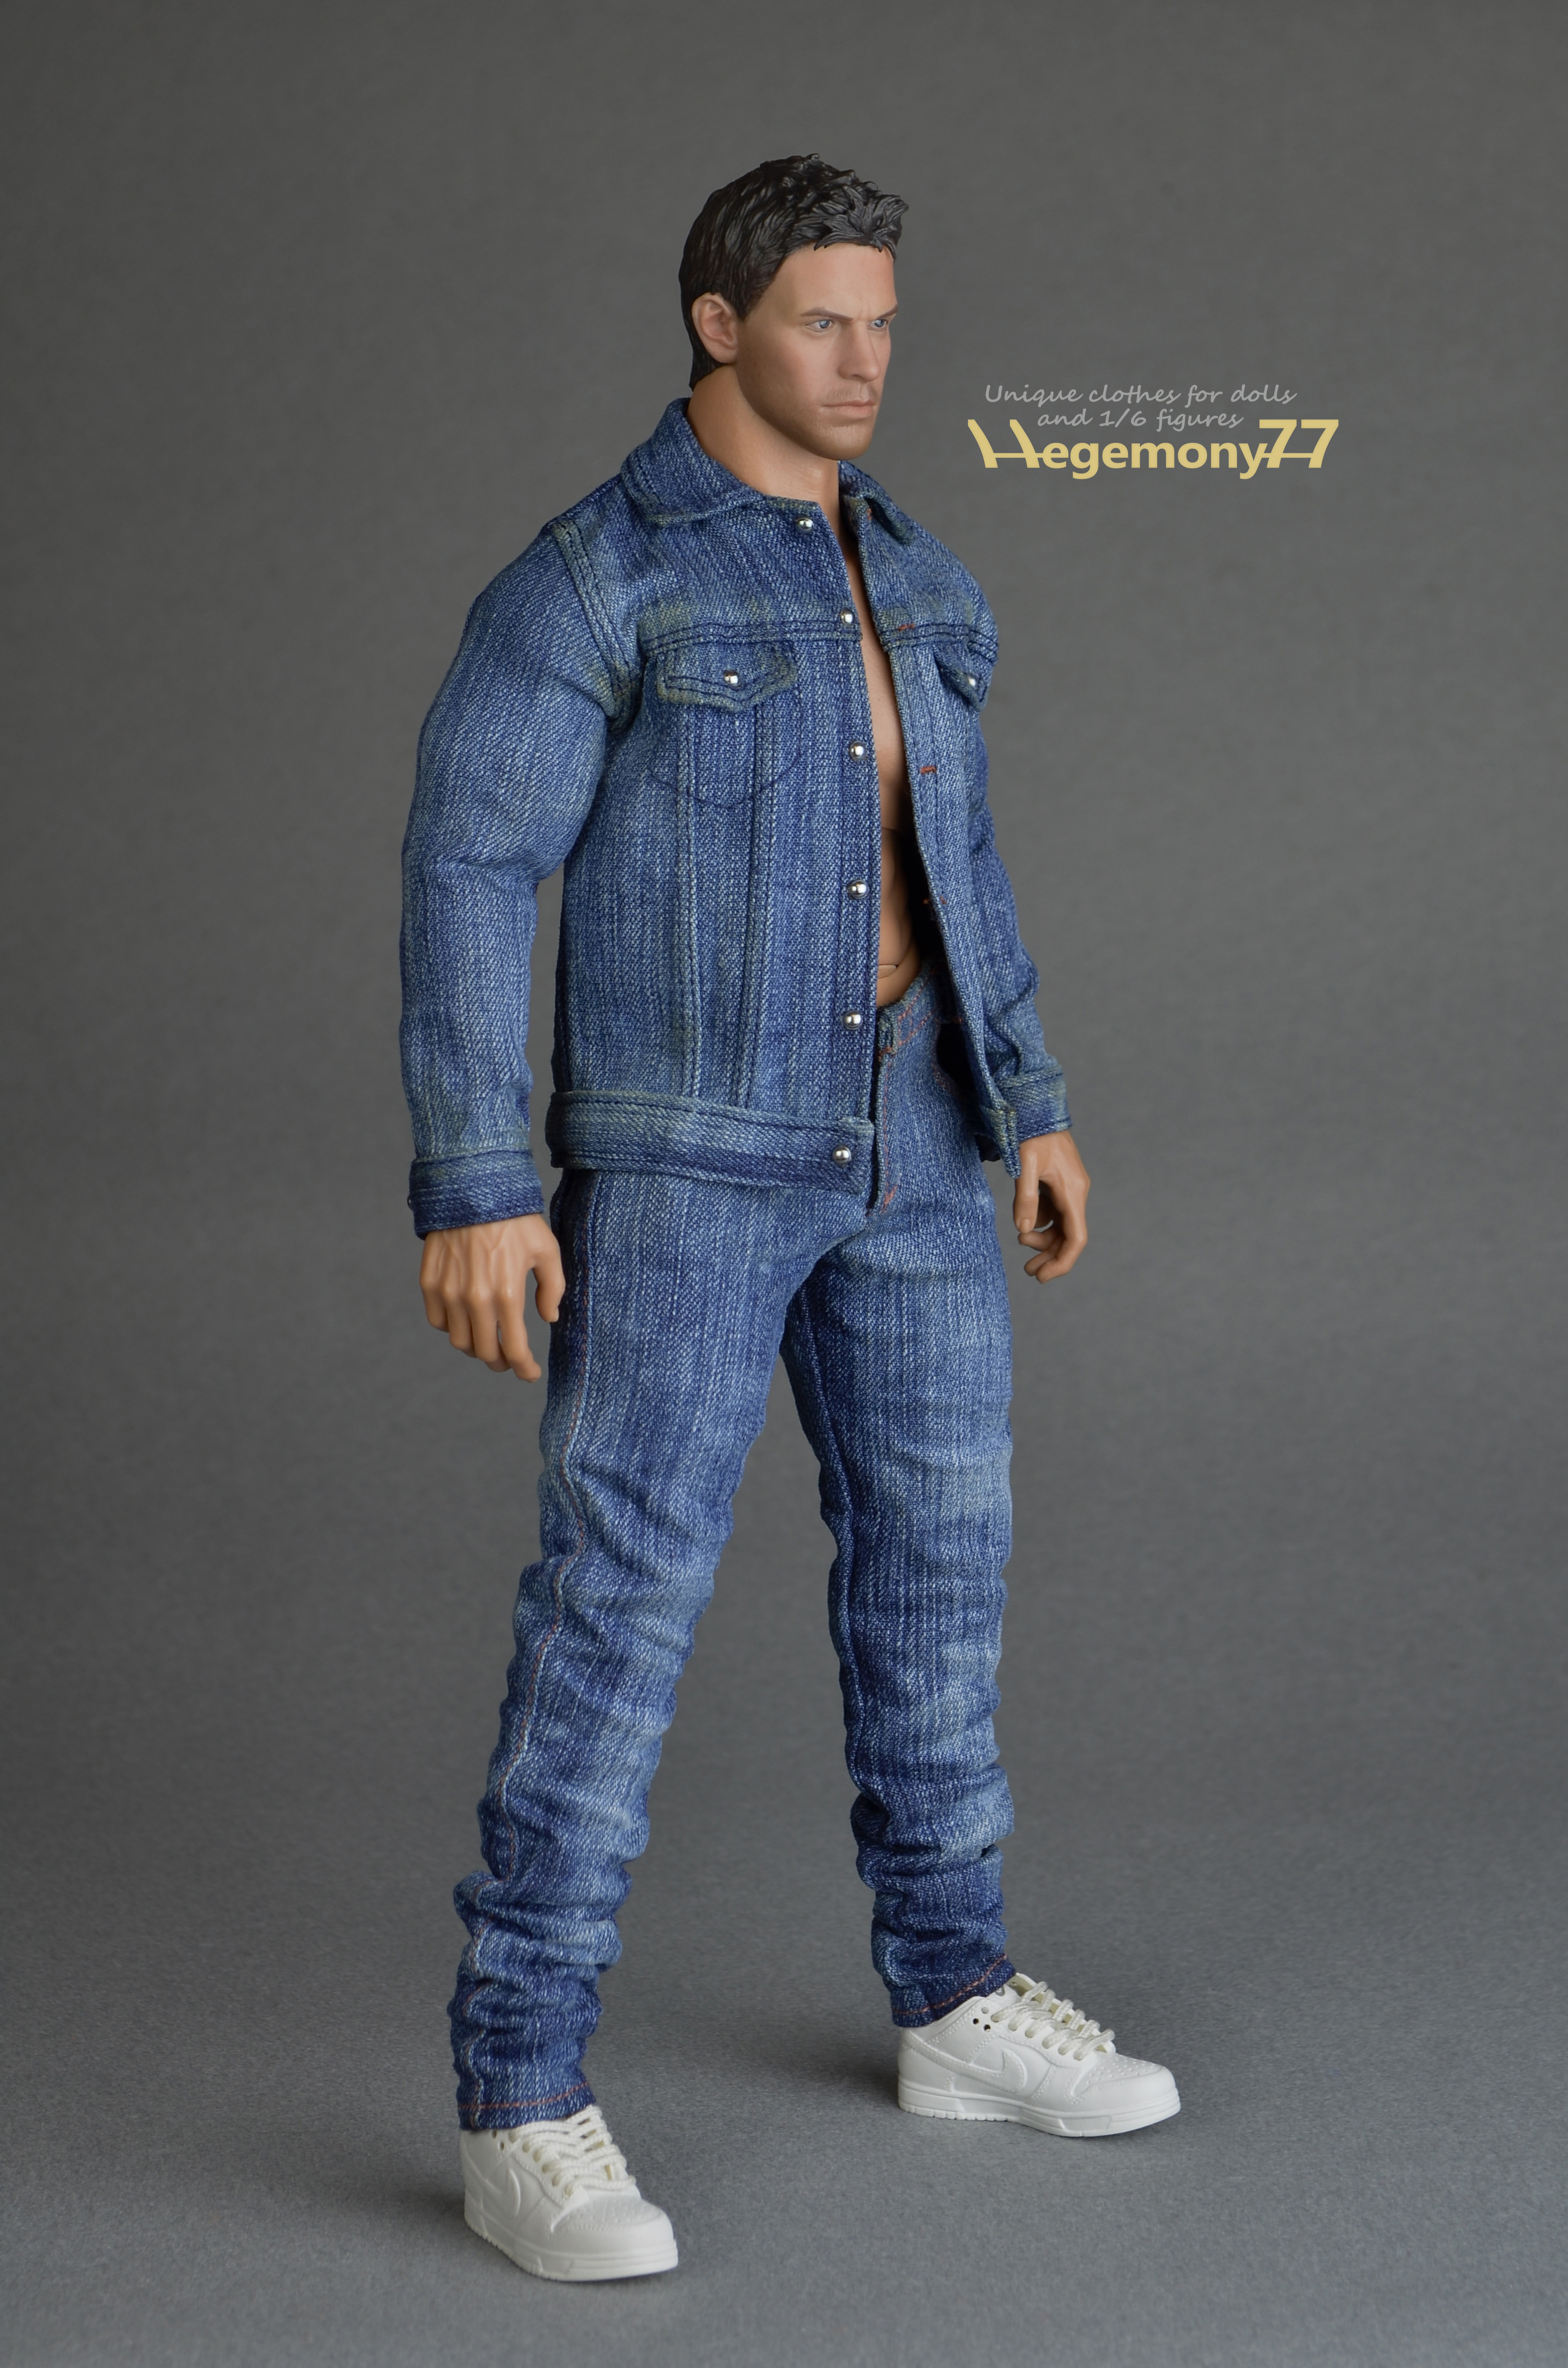 Dark blue jeans L07-51 1/6 scale action figure.